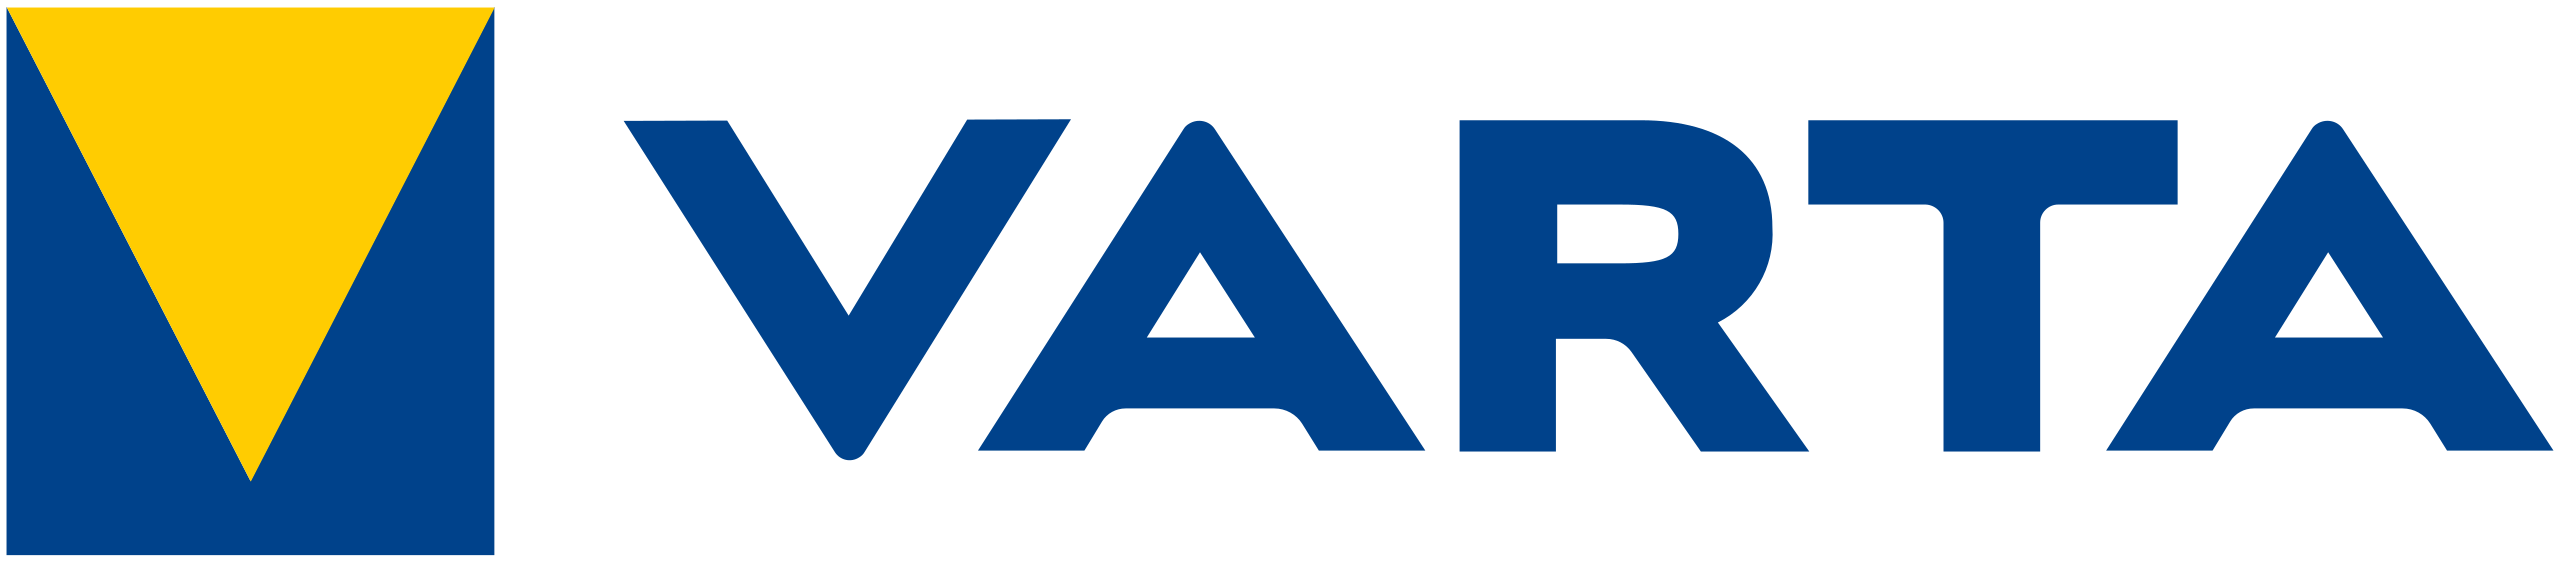 Varta-logo-2021.svg (1)